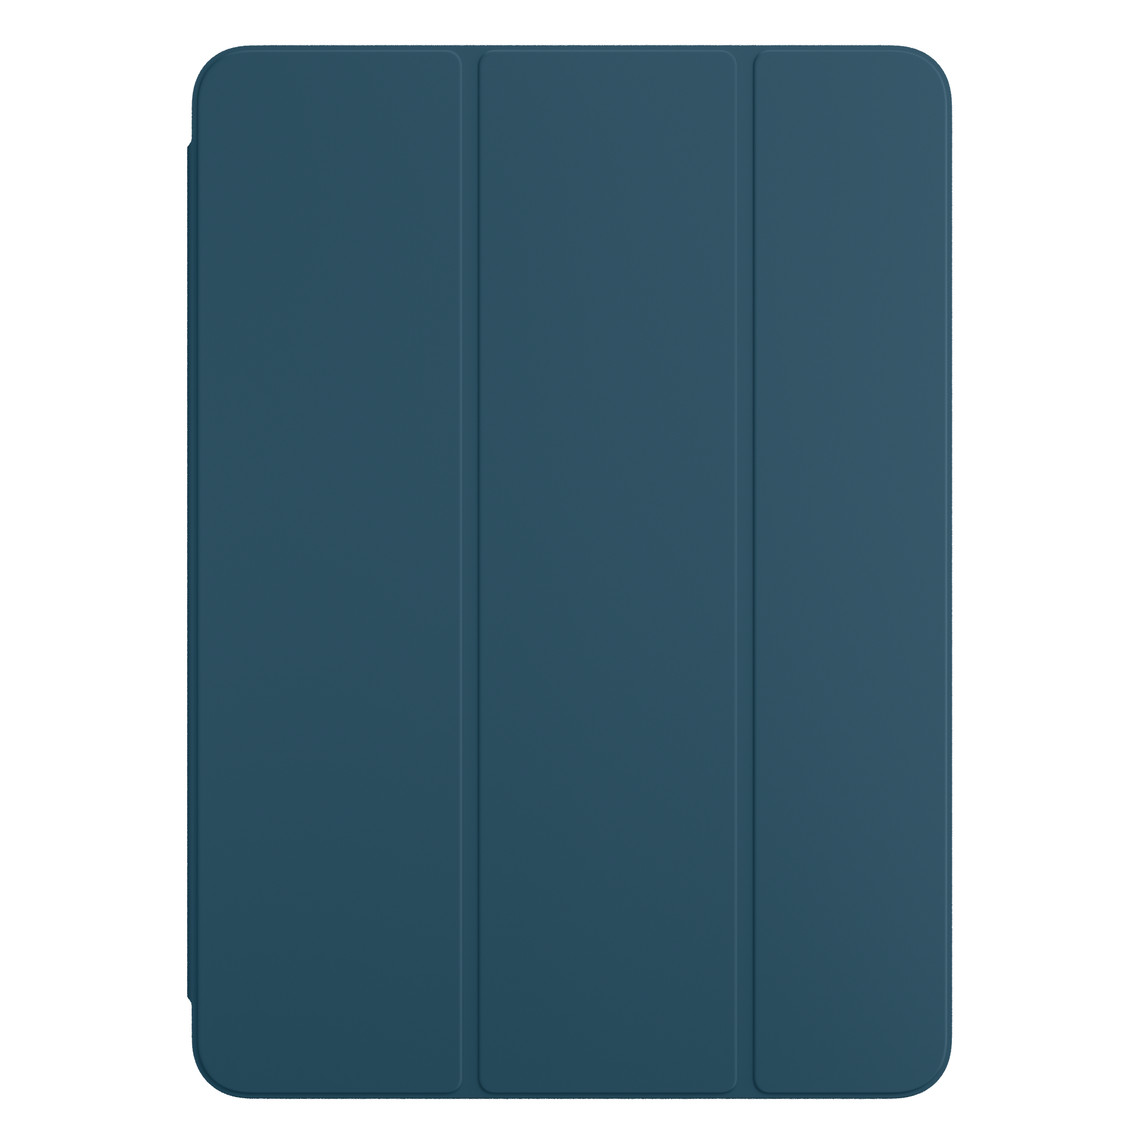 適用於 iPad Pro 的海藍色智慧型摺套正面圖。